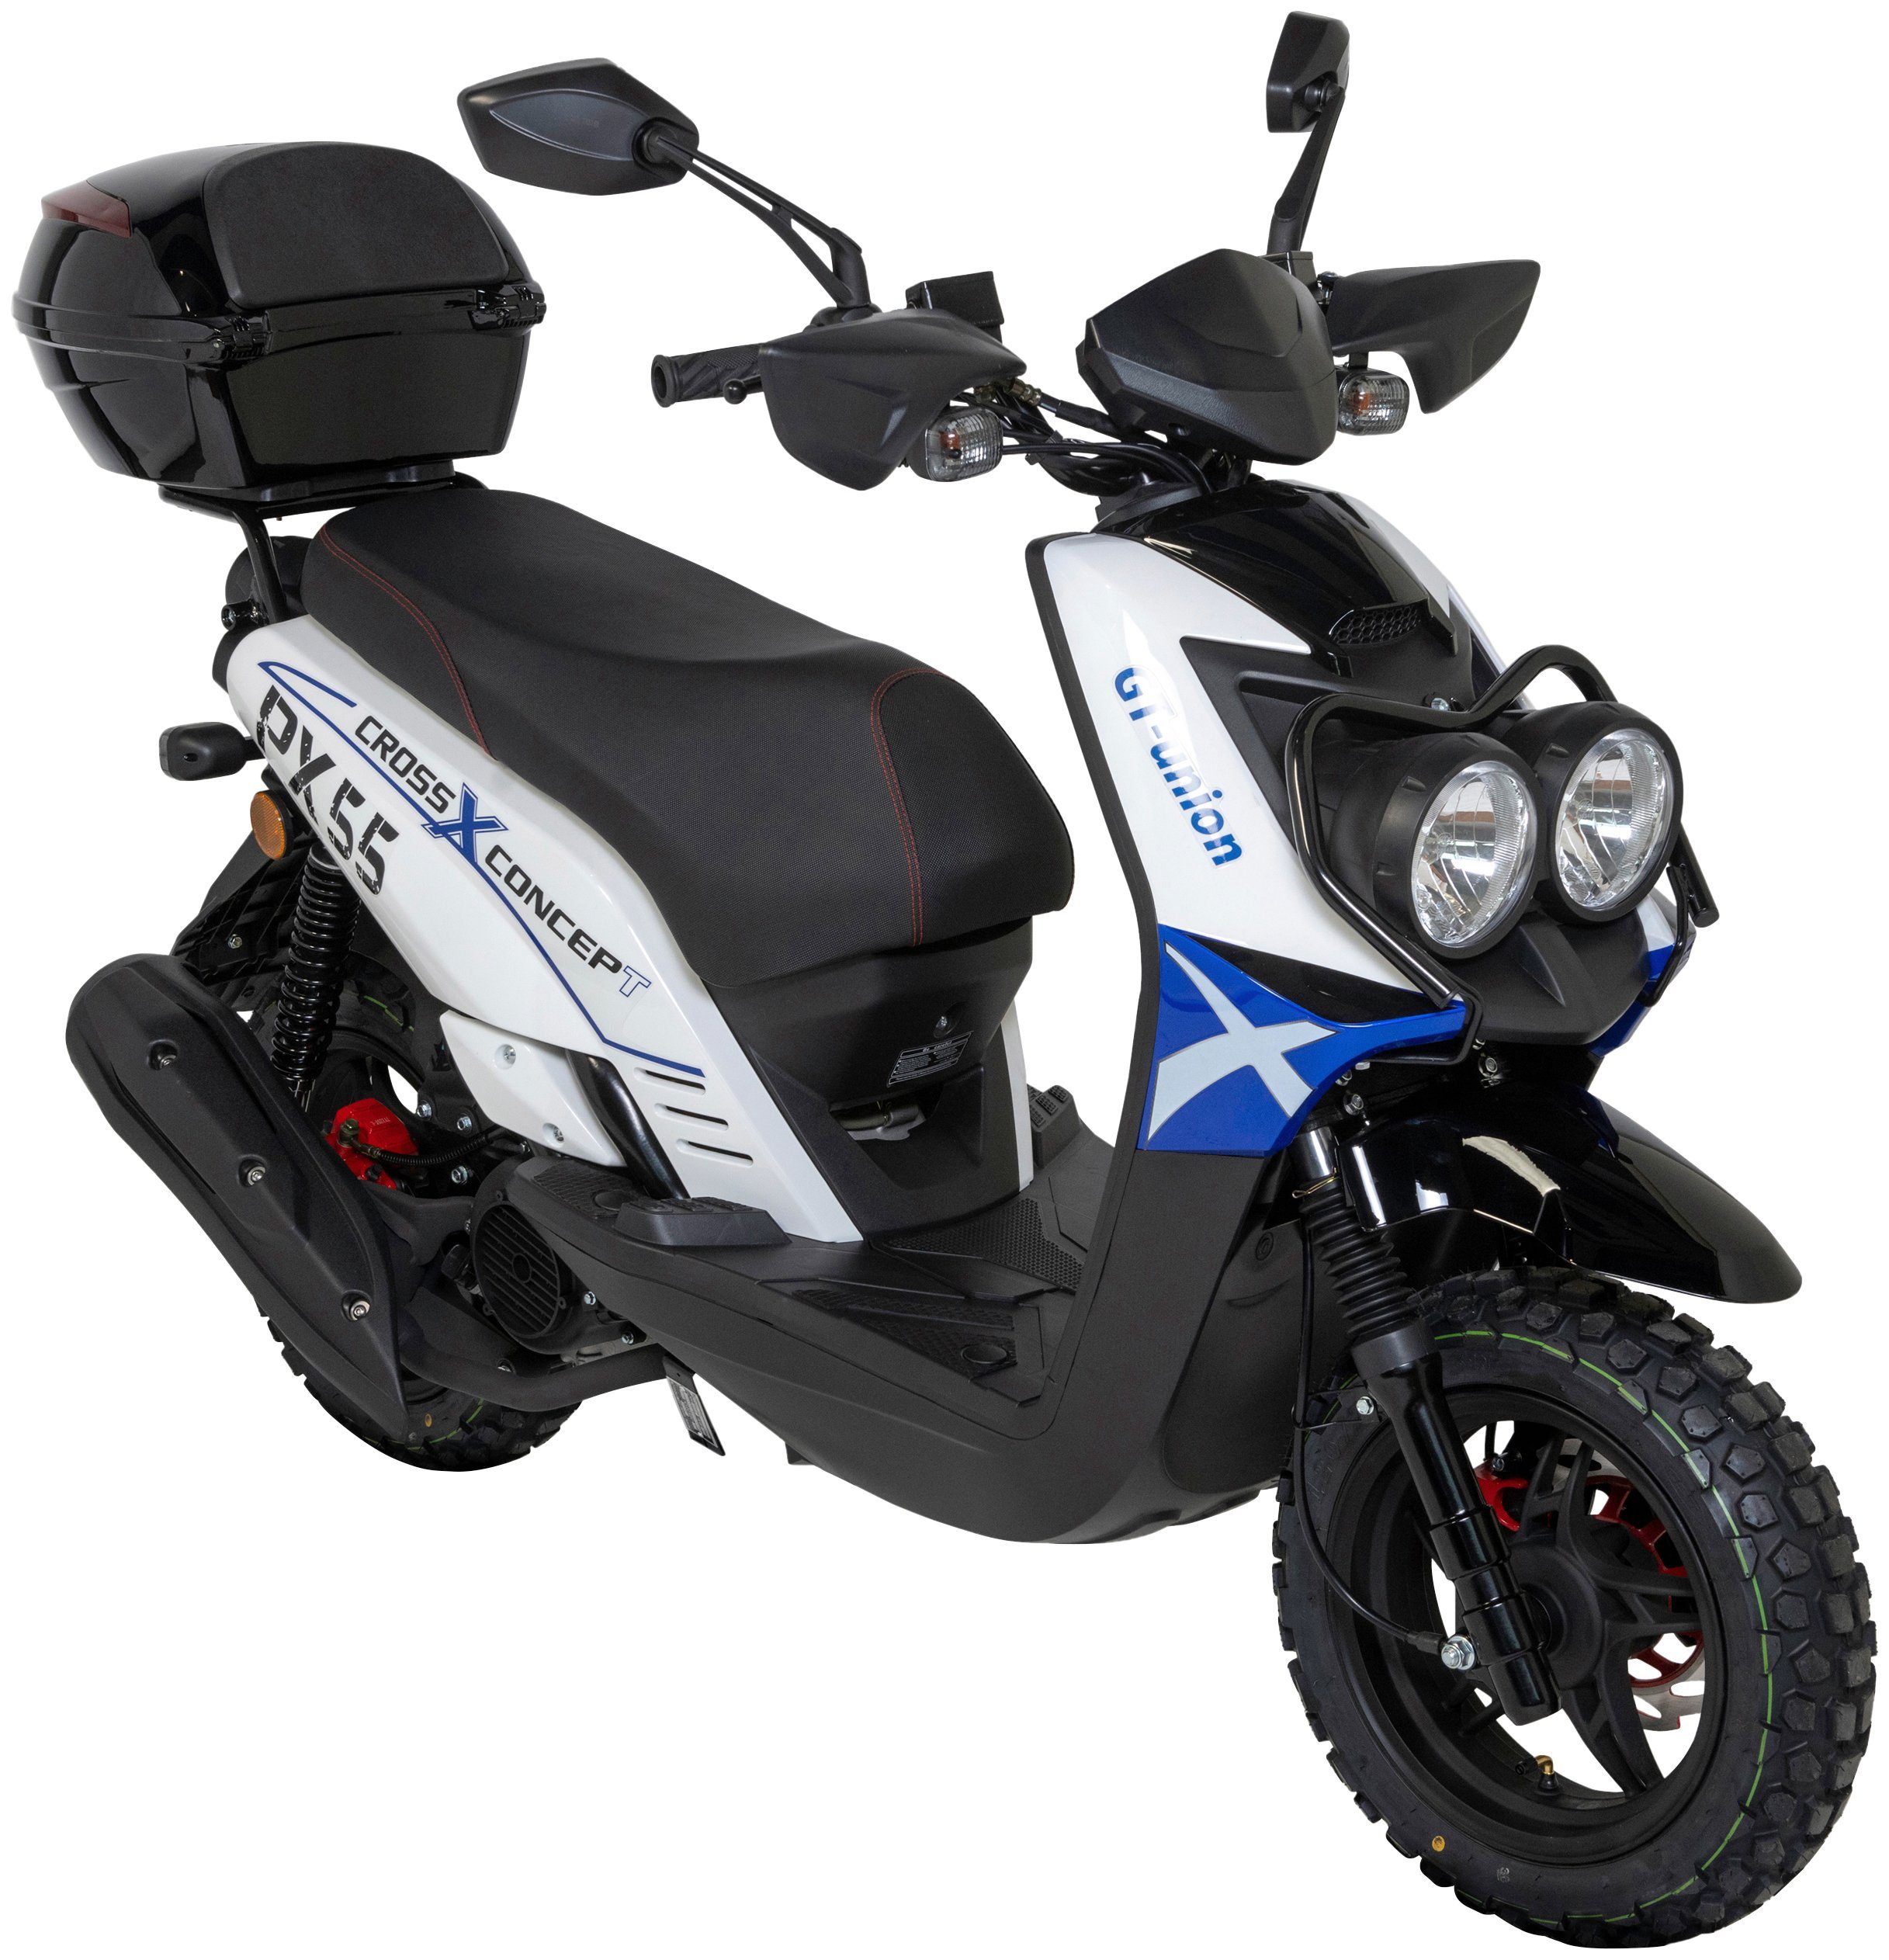 GT UNION weiß/blau/schwarz Euro Cross-Concept, 45 50 ccm, 55 mit PX (Set), 5, Motorroller km/h, Topcase